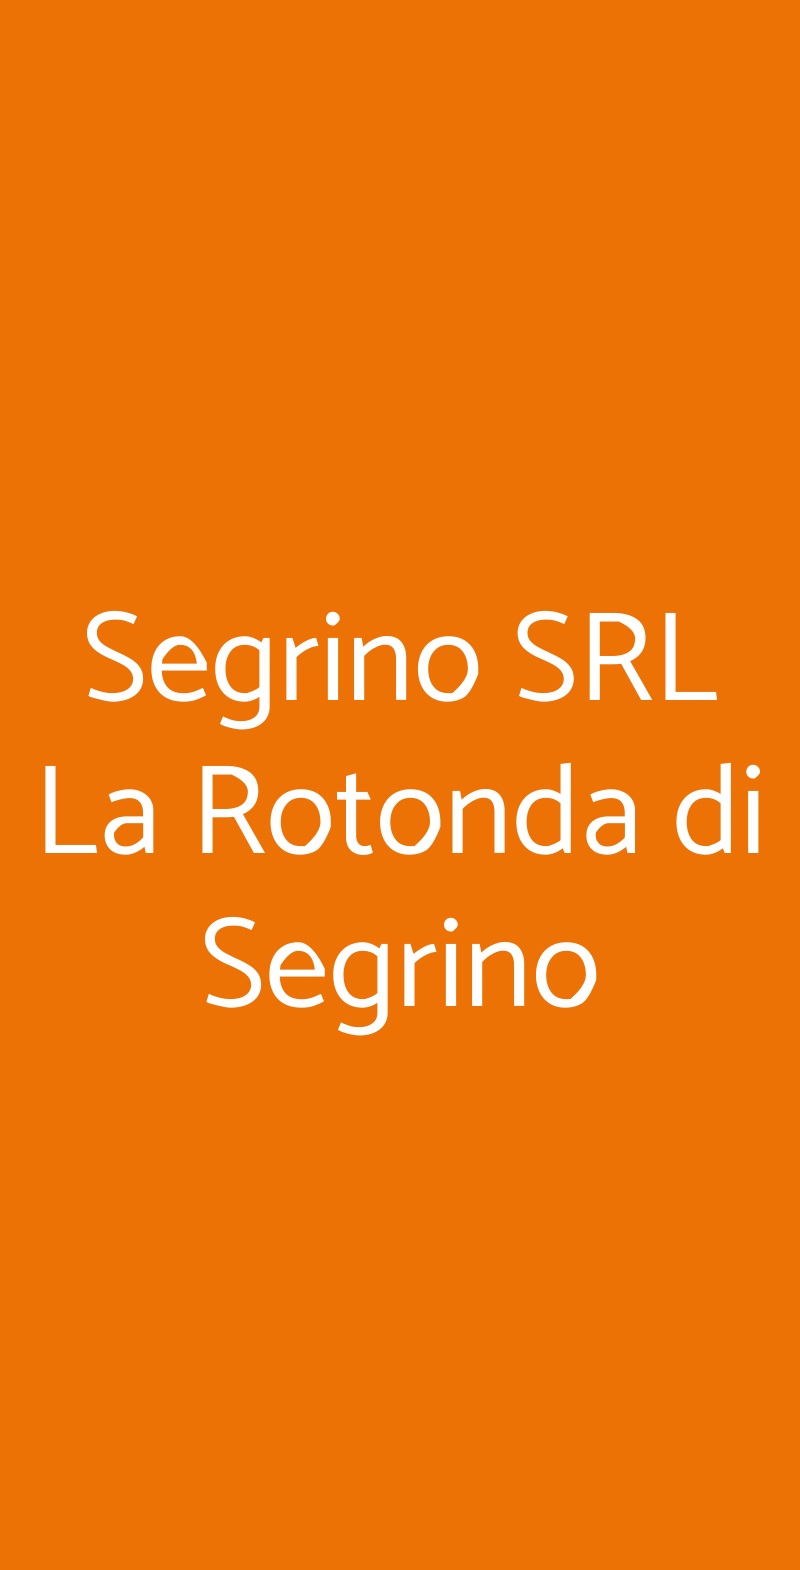 Segrino SRL La Rotonda di Segrino Milano menù 1 pagina